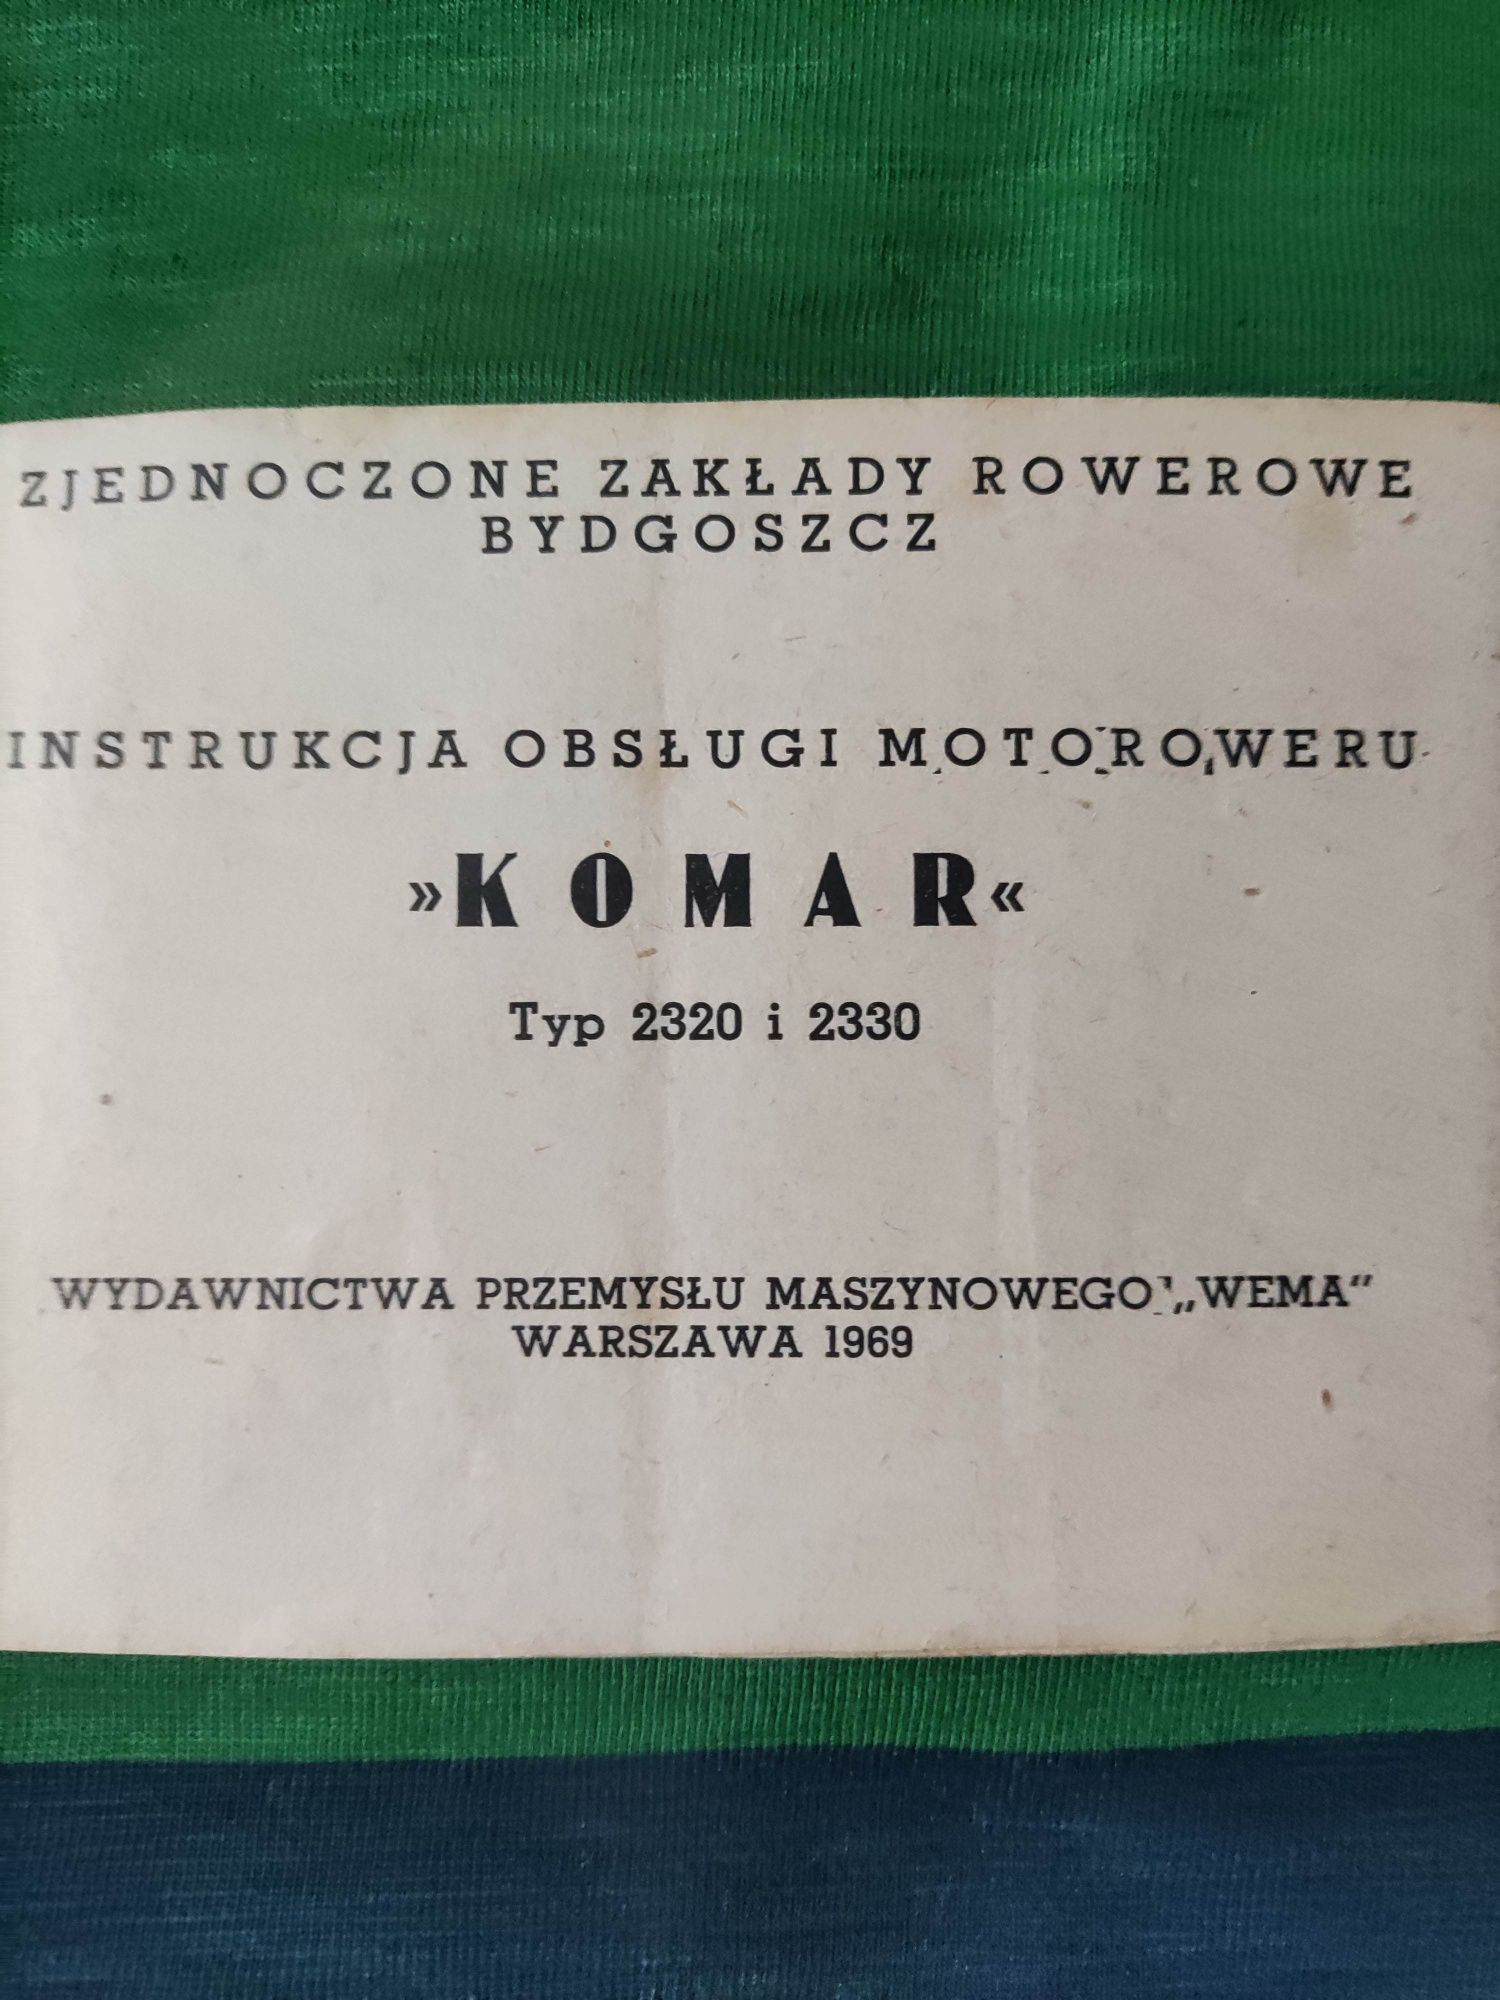 Instrukcja obsługi motoroweru Komar z roku 1969 ZZR

Stan jak na zdjęc